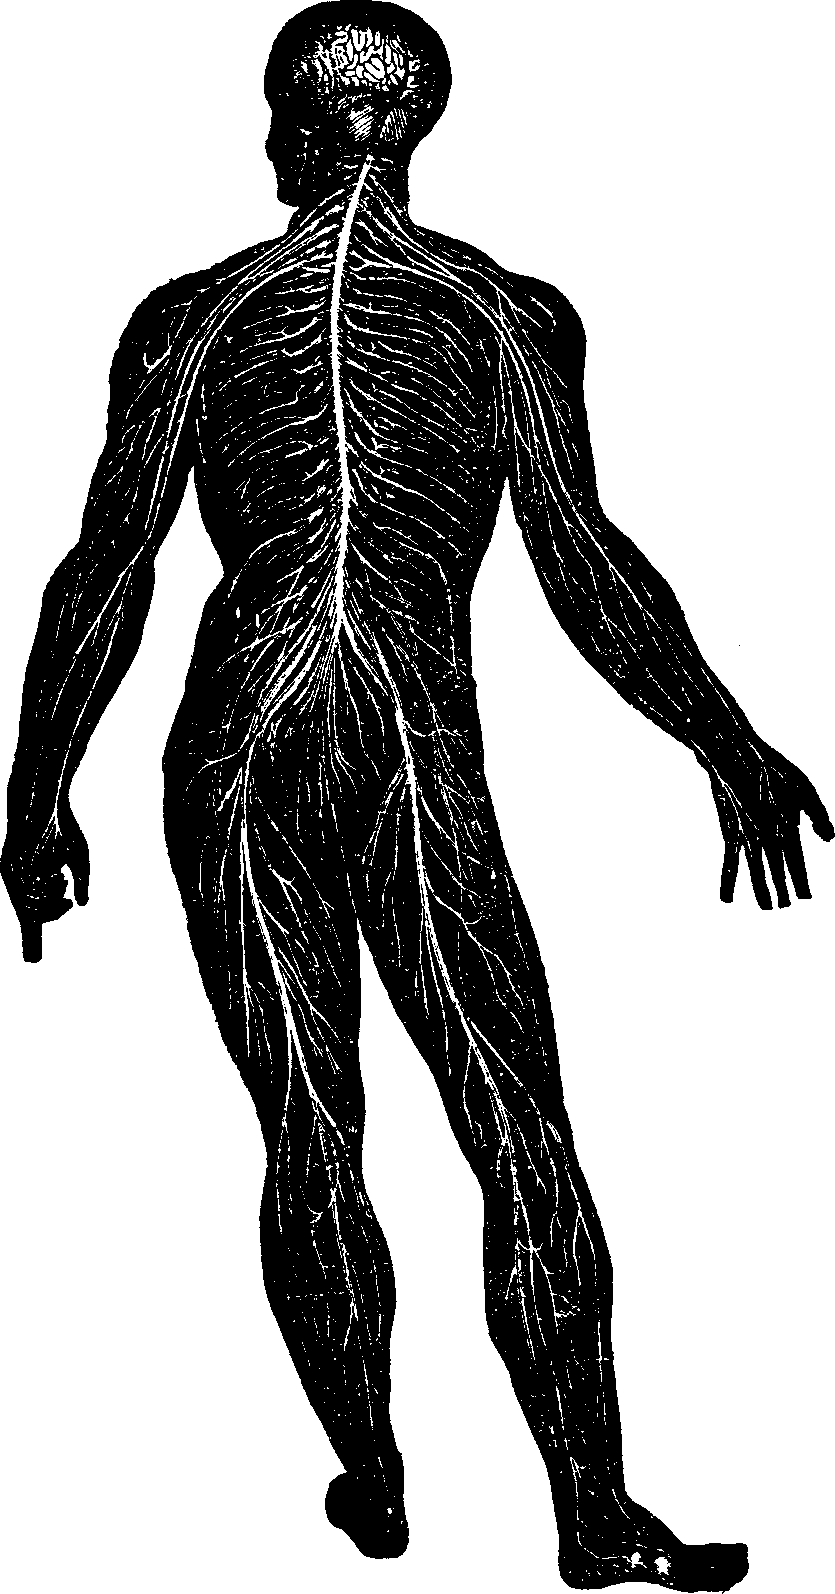 Illustration:
Fig. 1. Nervous System.